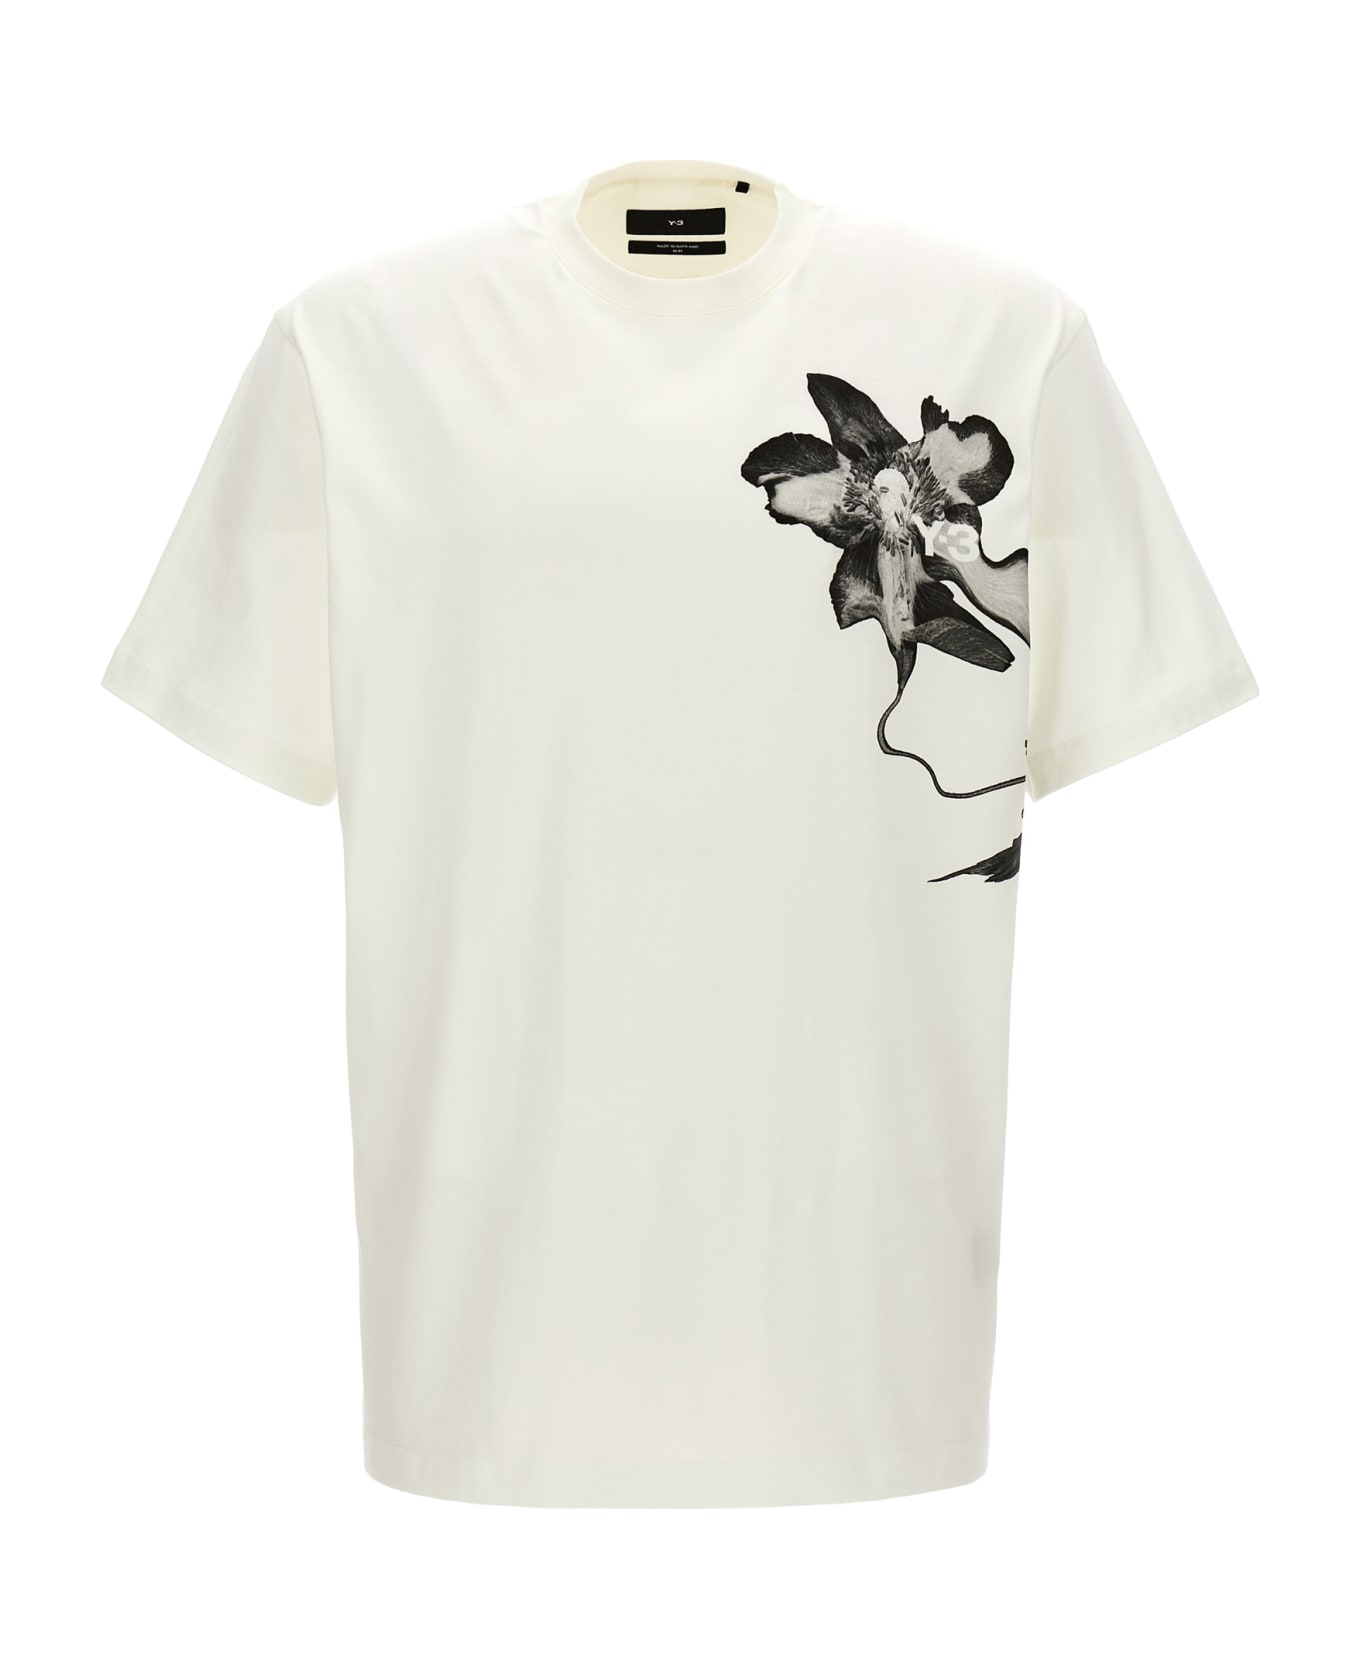 Y-3 'gfx' T-shirt - White/Black Tシャツ